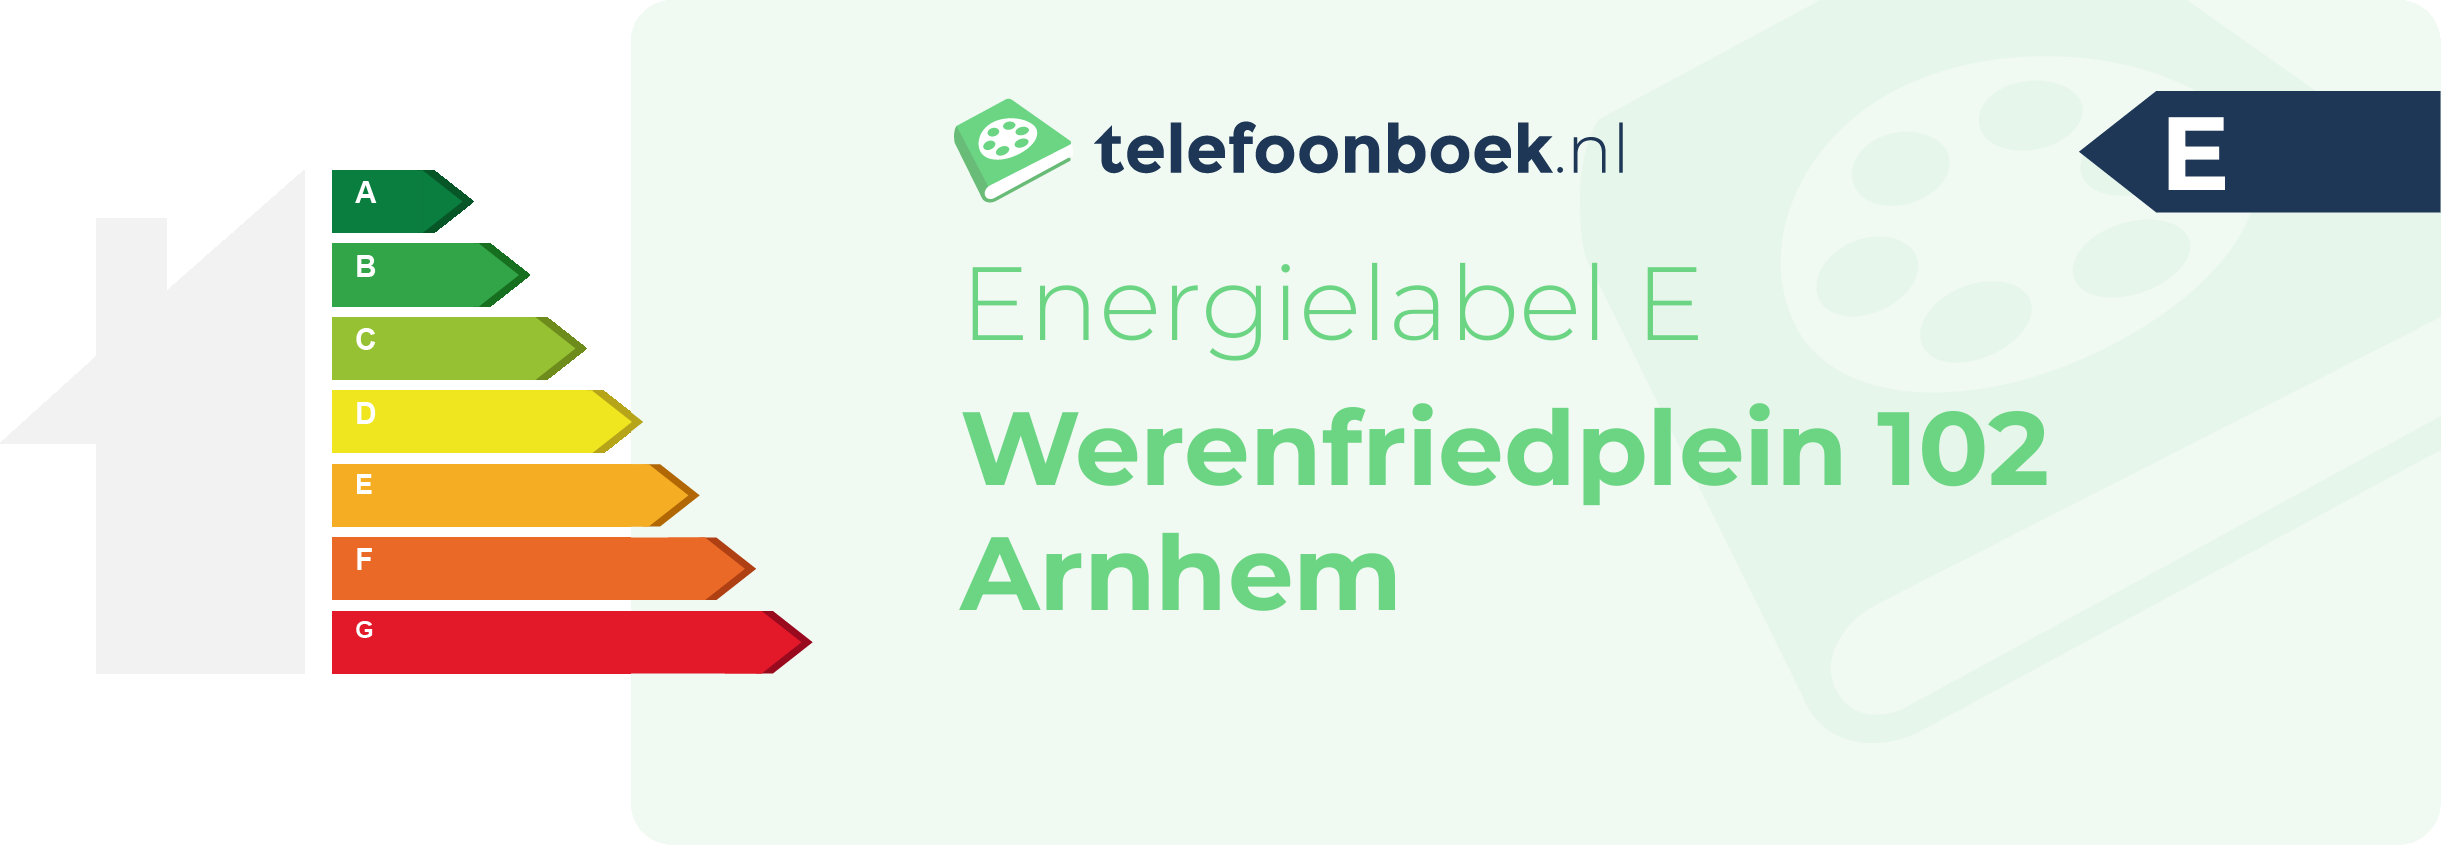 Energielabel Werenfriedplein 102 Arnhem